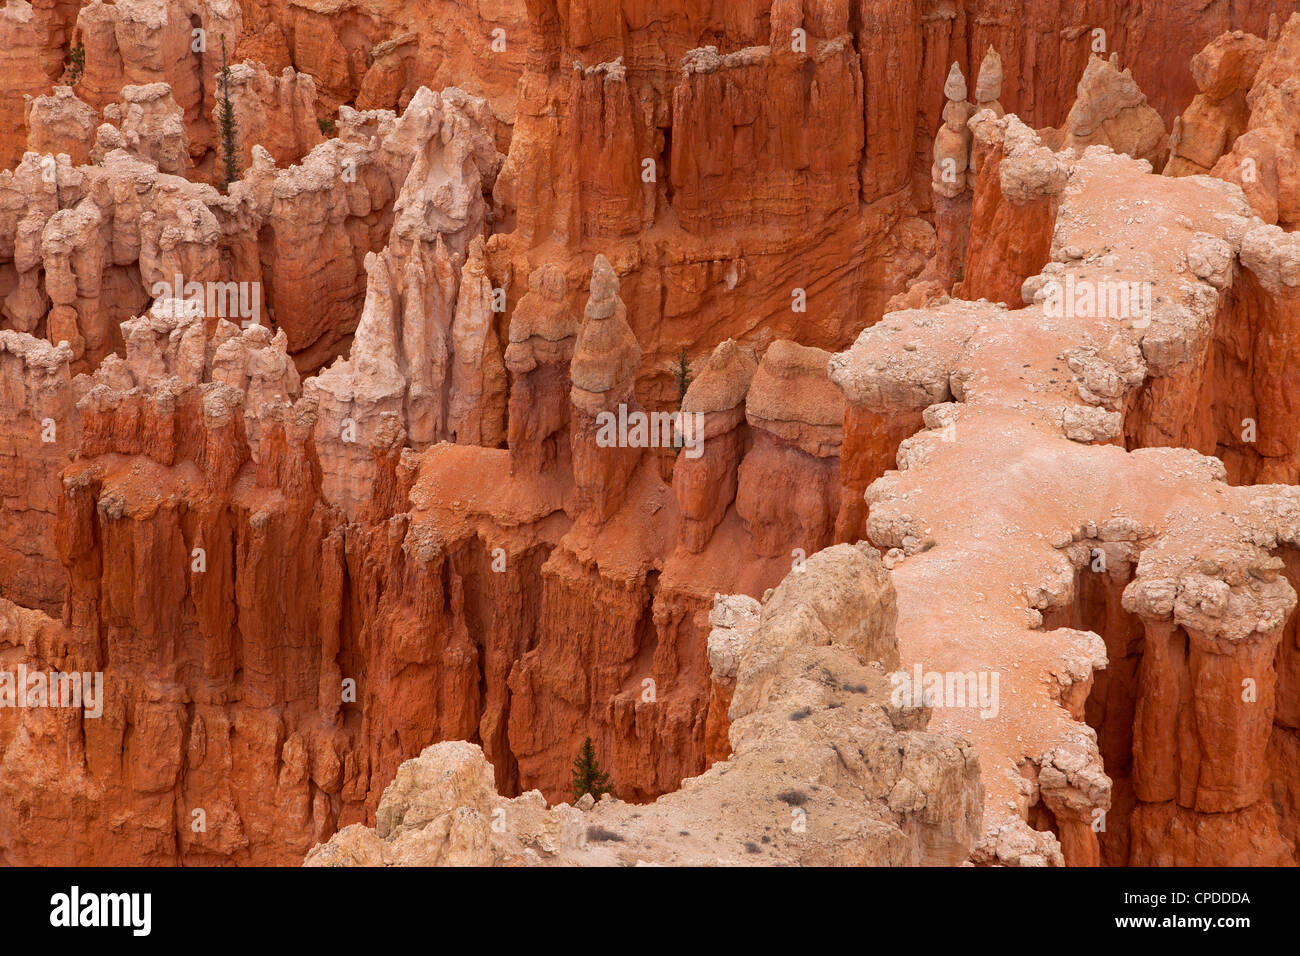 Bryce-Canyon-Nationalpark im Süden von Utah. Robust und dramatischen roten Stein Felsen in interessante Formationen. Don Despain Stockfoto